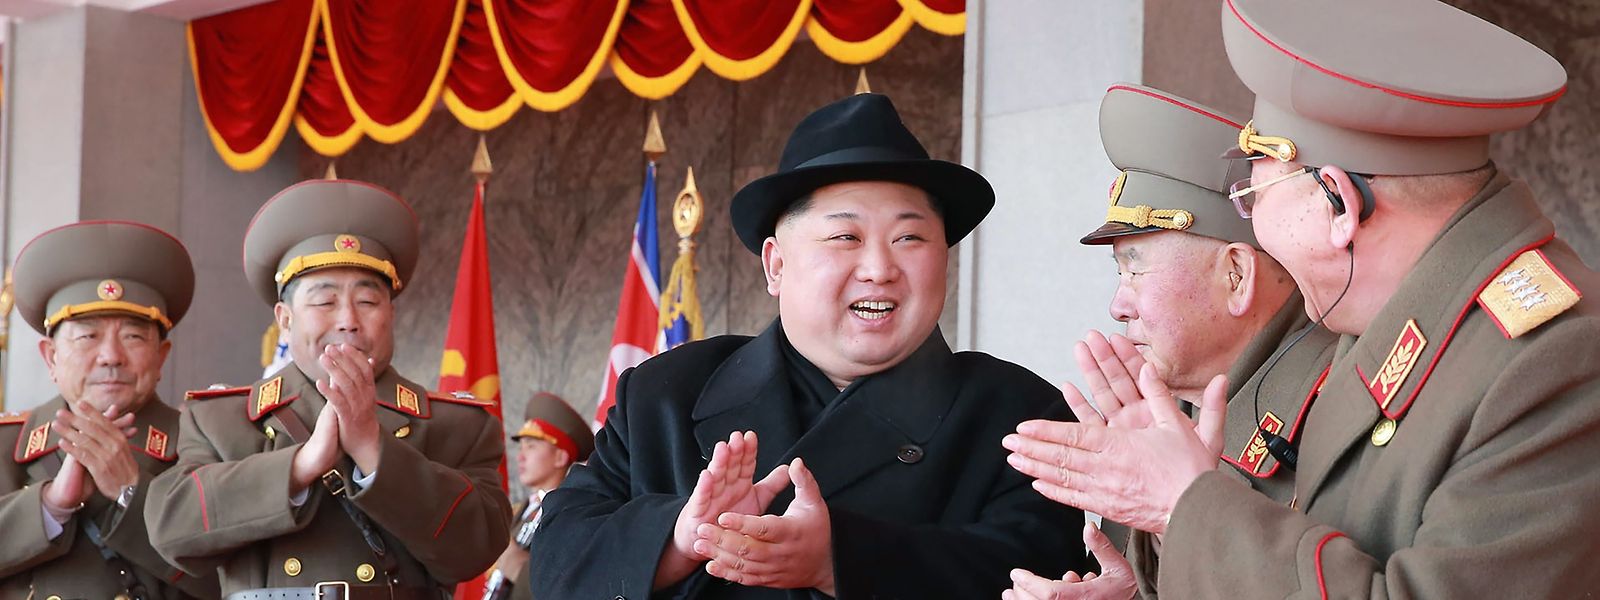 Annäherung während olympischen Spielen: Kim Jong Un lädt südkoreanischen Präsidenten ein.